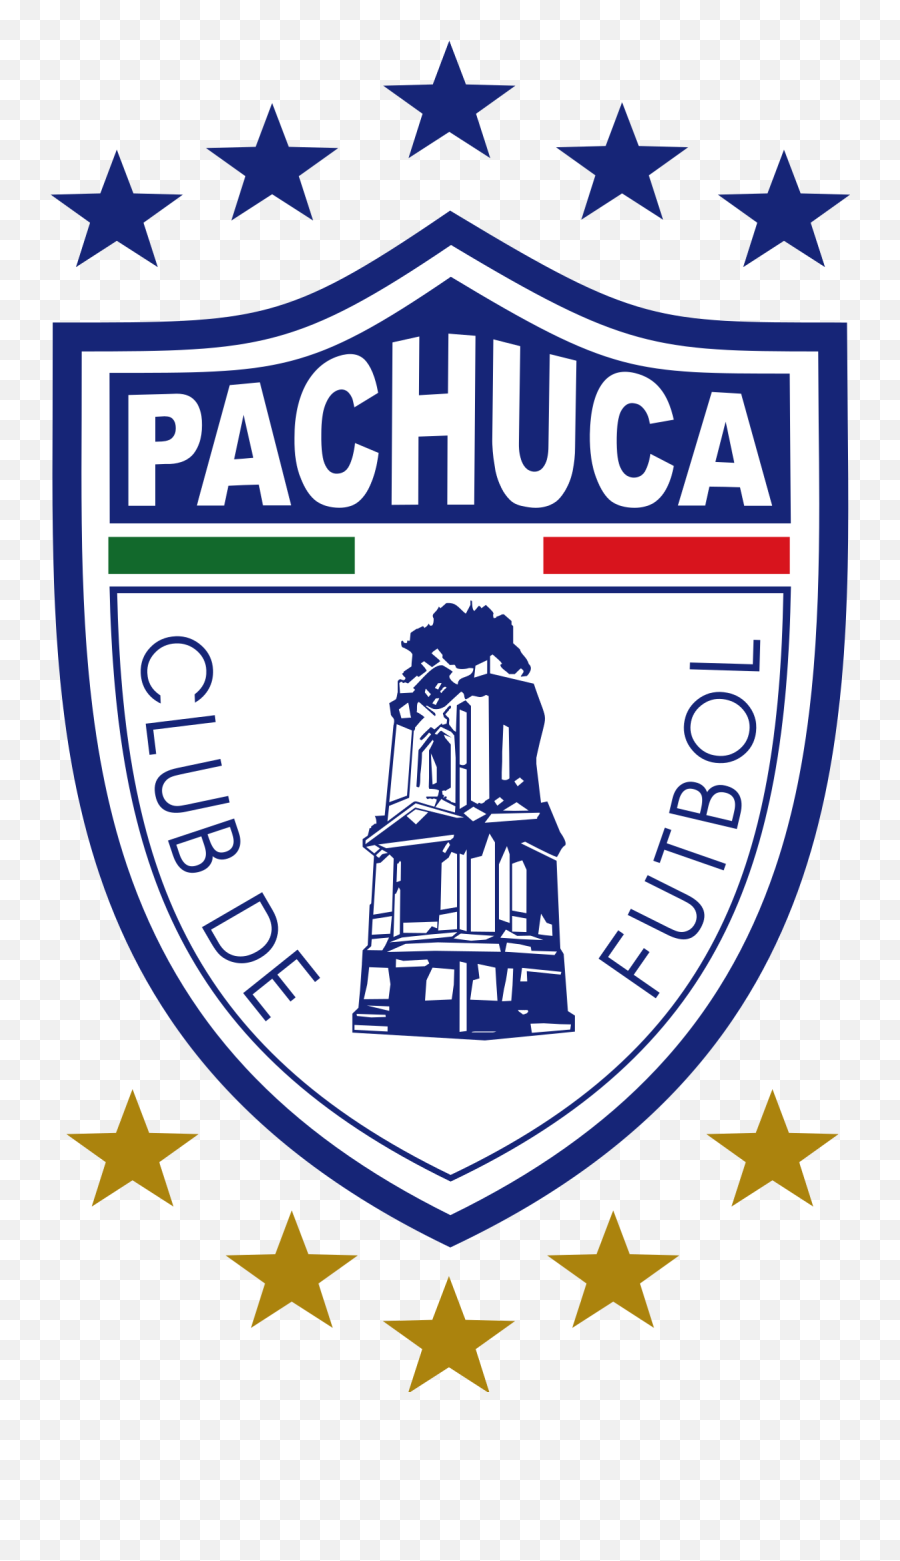 C - Logo Pachuca Emoji,Emoticons Para Facebook Del Grupo Chivas